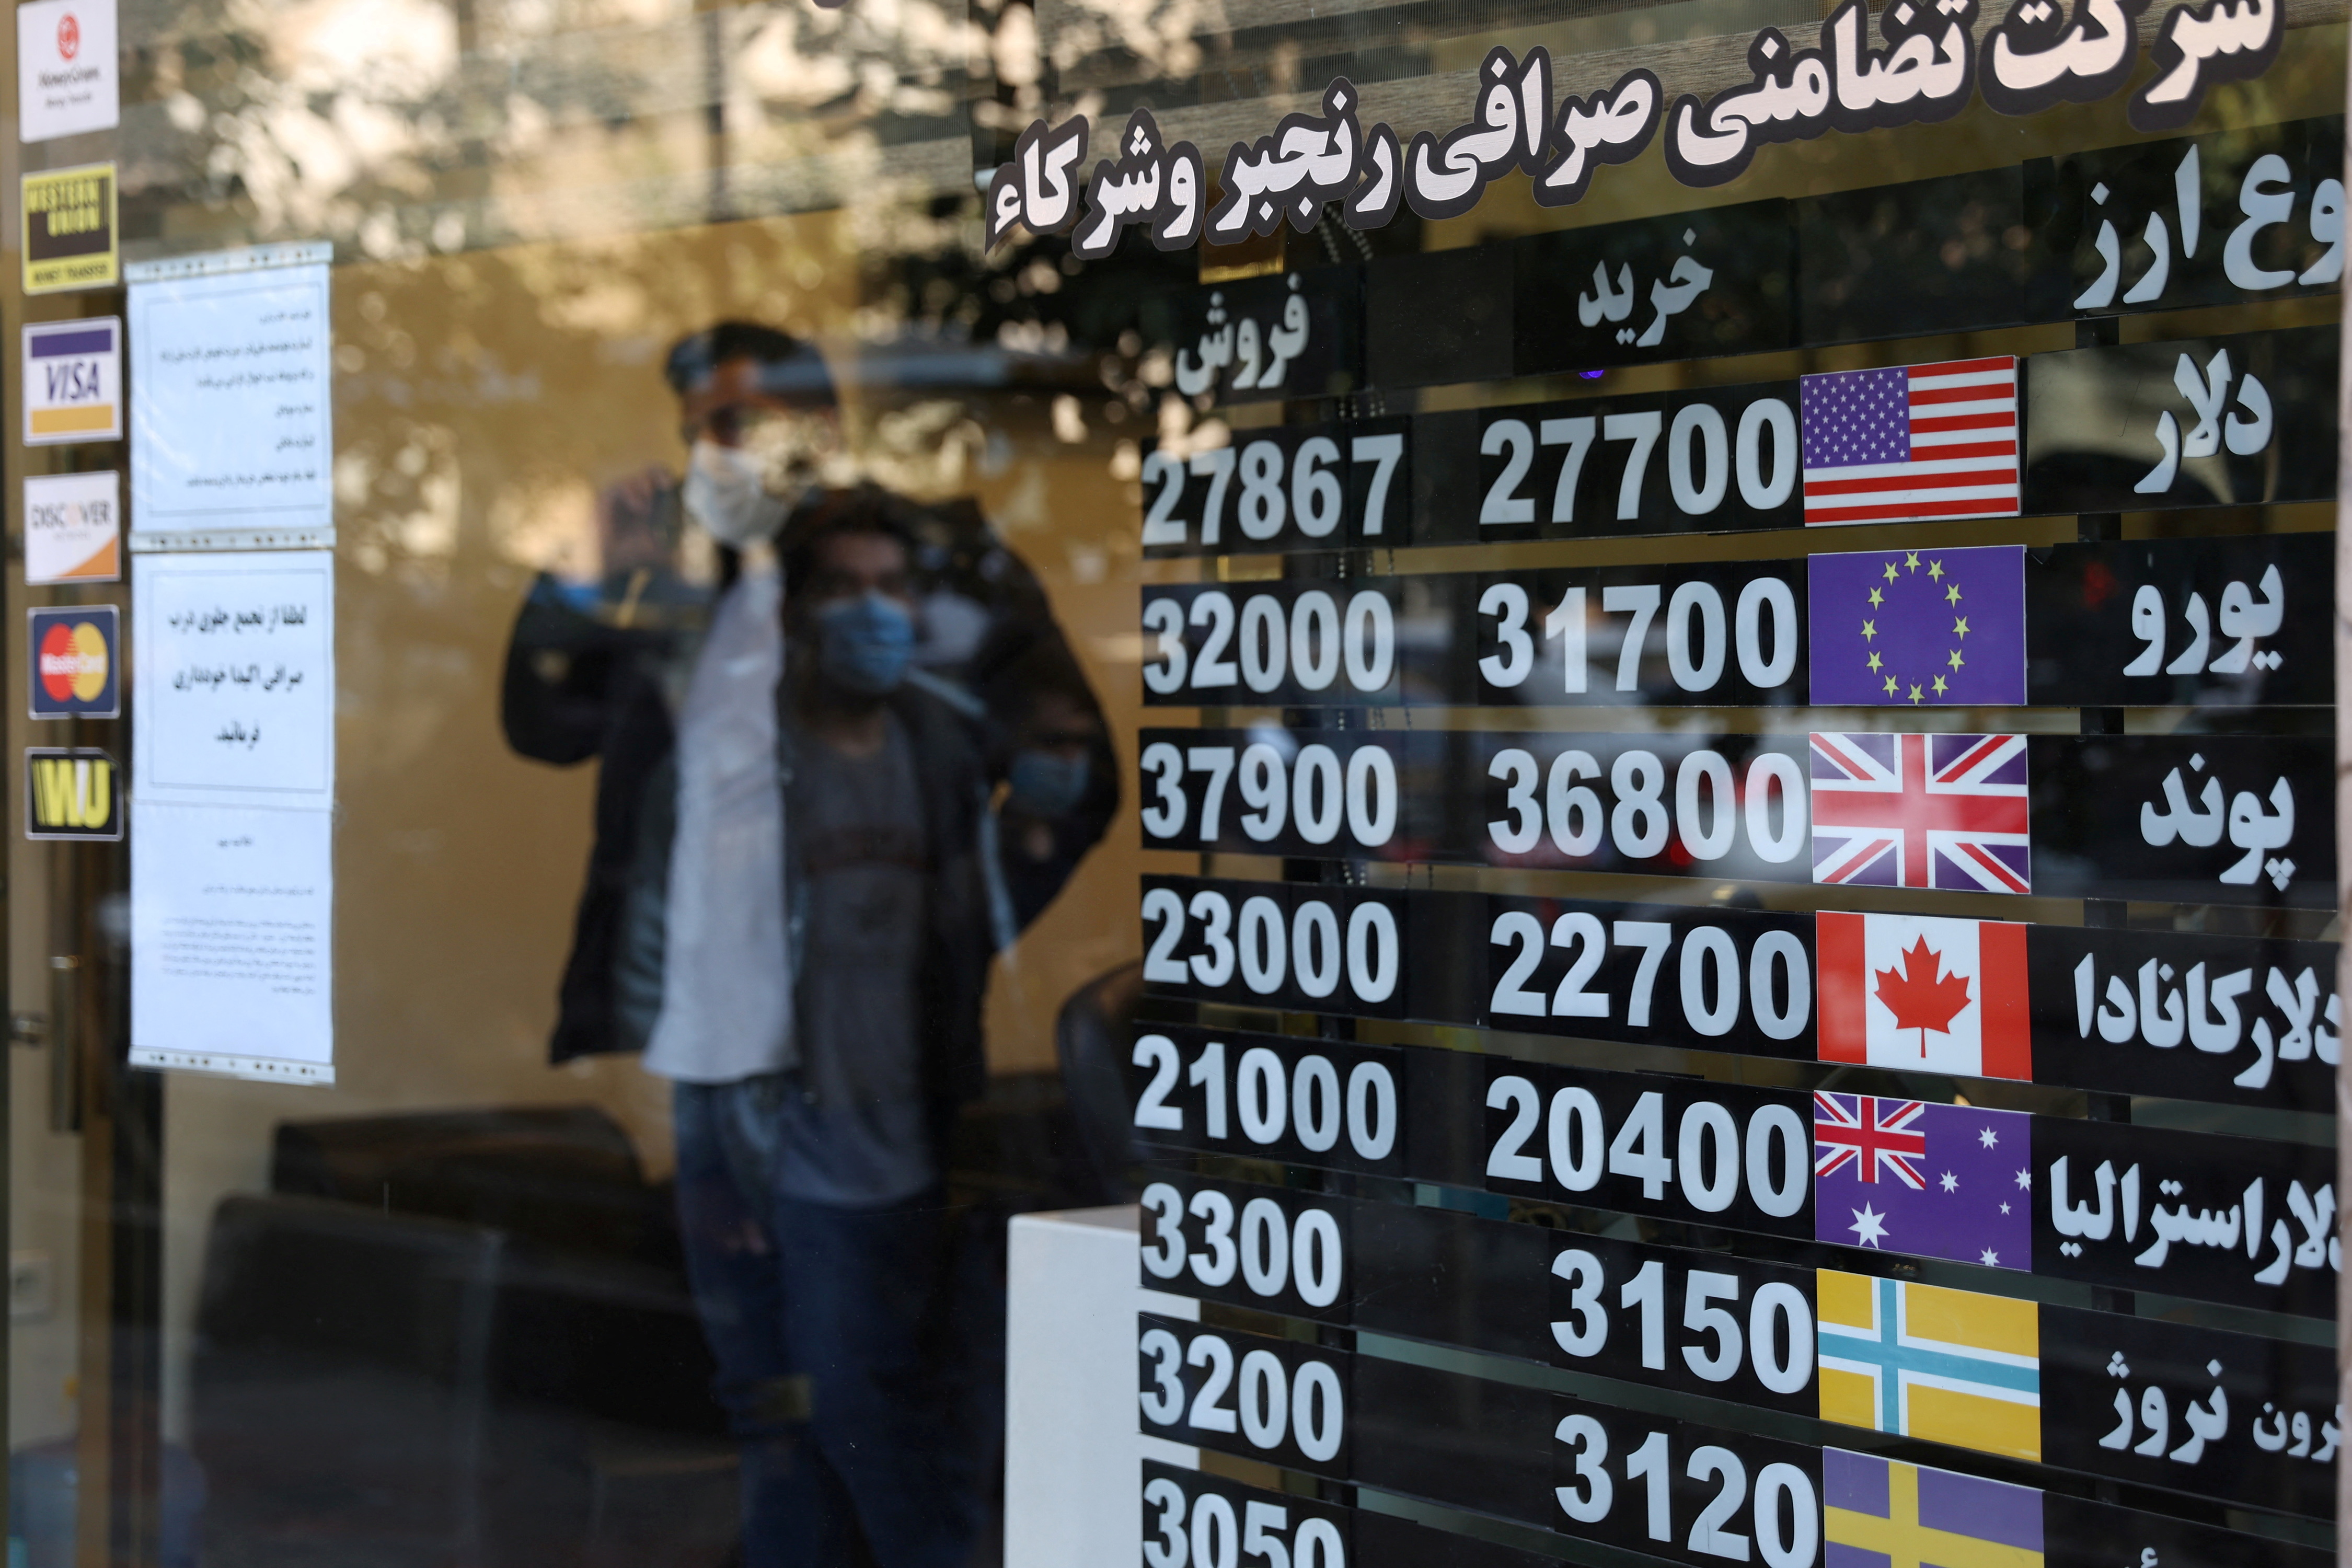 Una casa de cambio en Tehran. La exlusión del sistema SWIFT golpeó duramente a la economía persa (Majid Asgaripour/WANA)